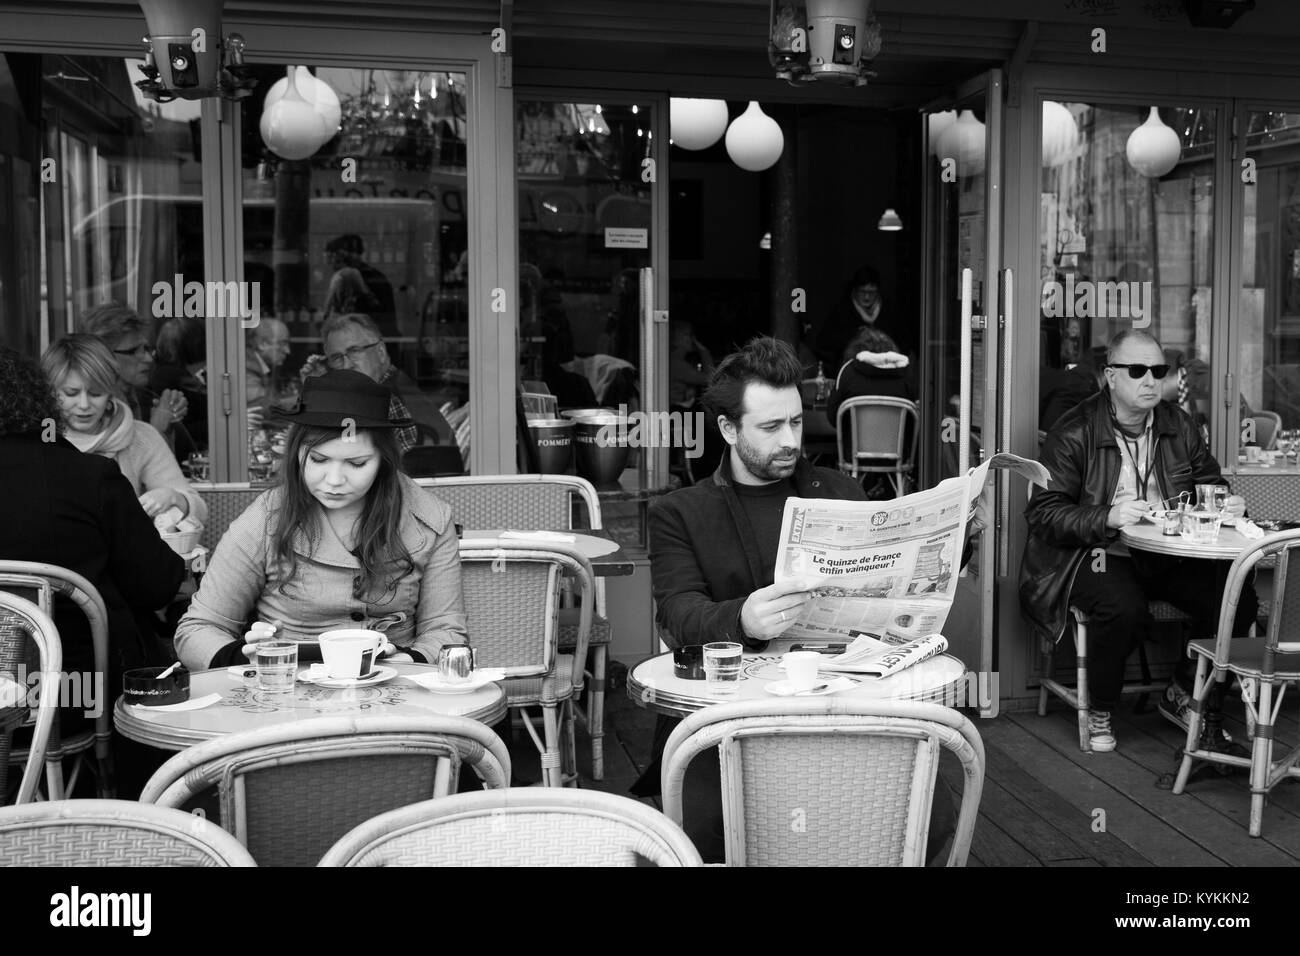 Parigi-Jan 2, 2014: Persone aventi il caffè, la lettura della carta in un locale tipico Sidewalk Cafe, che può essere visto in tutta Parigi. In bianco e nero foto Foto Stock